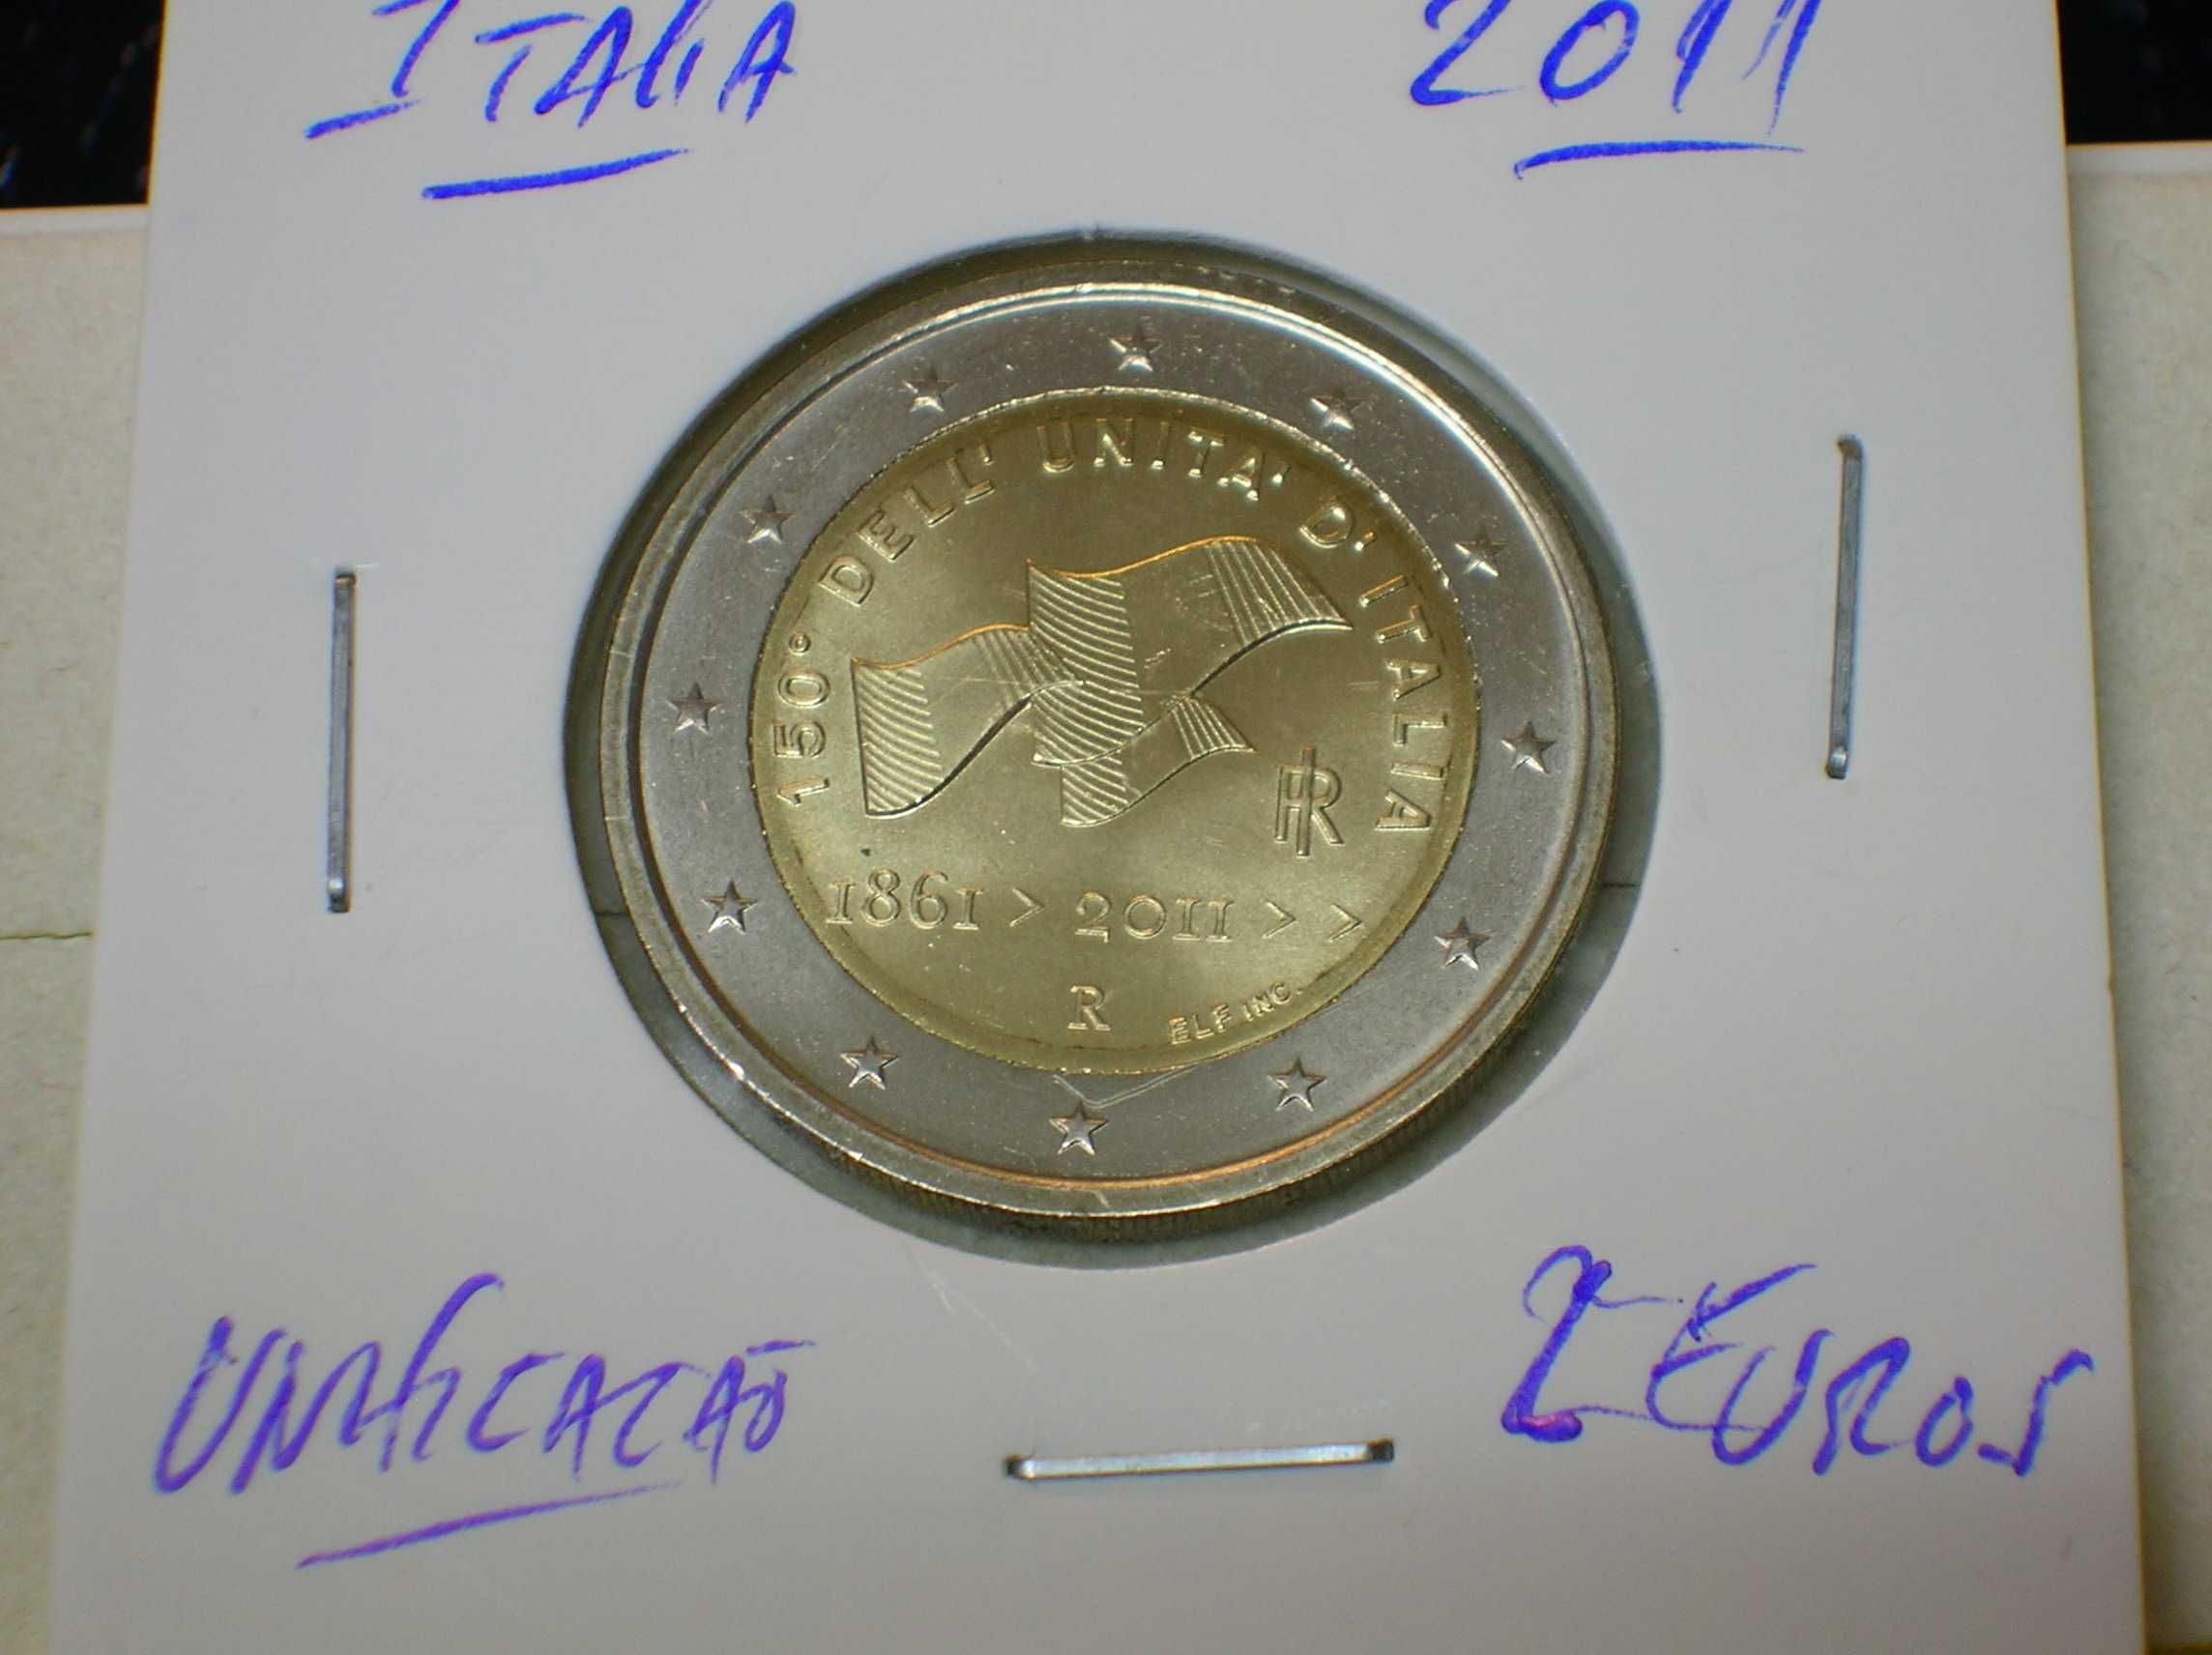 Italia / moeda 2 euros - 2011 / Unificação